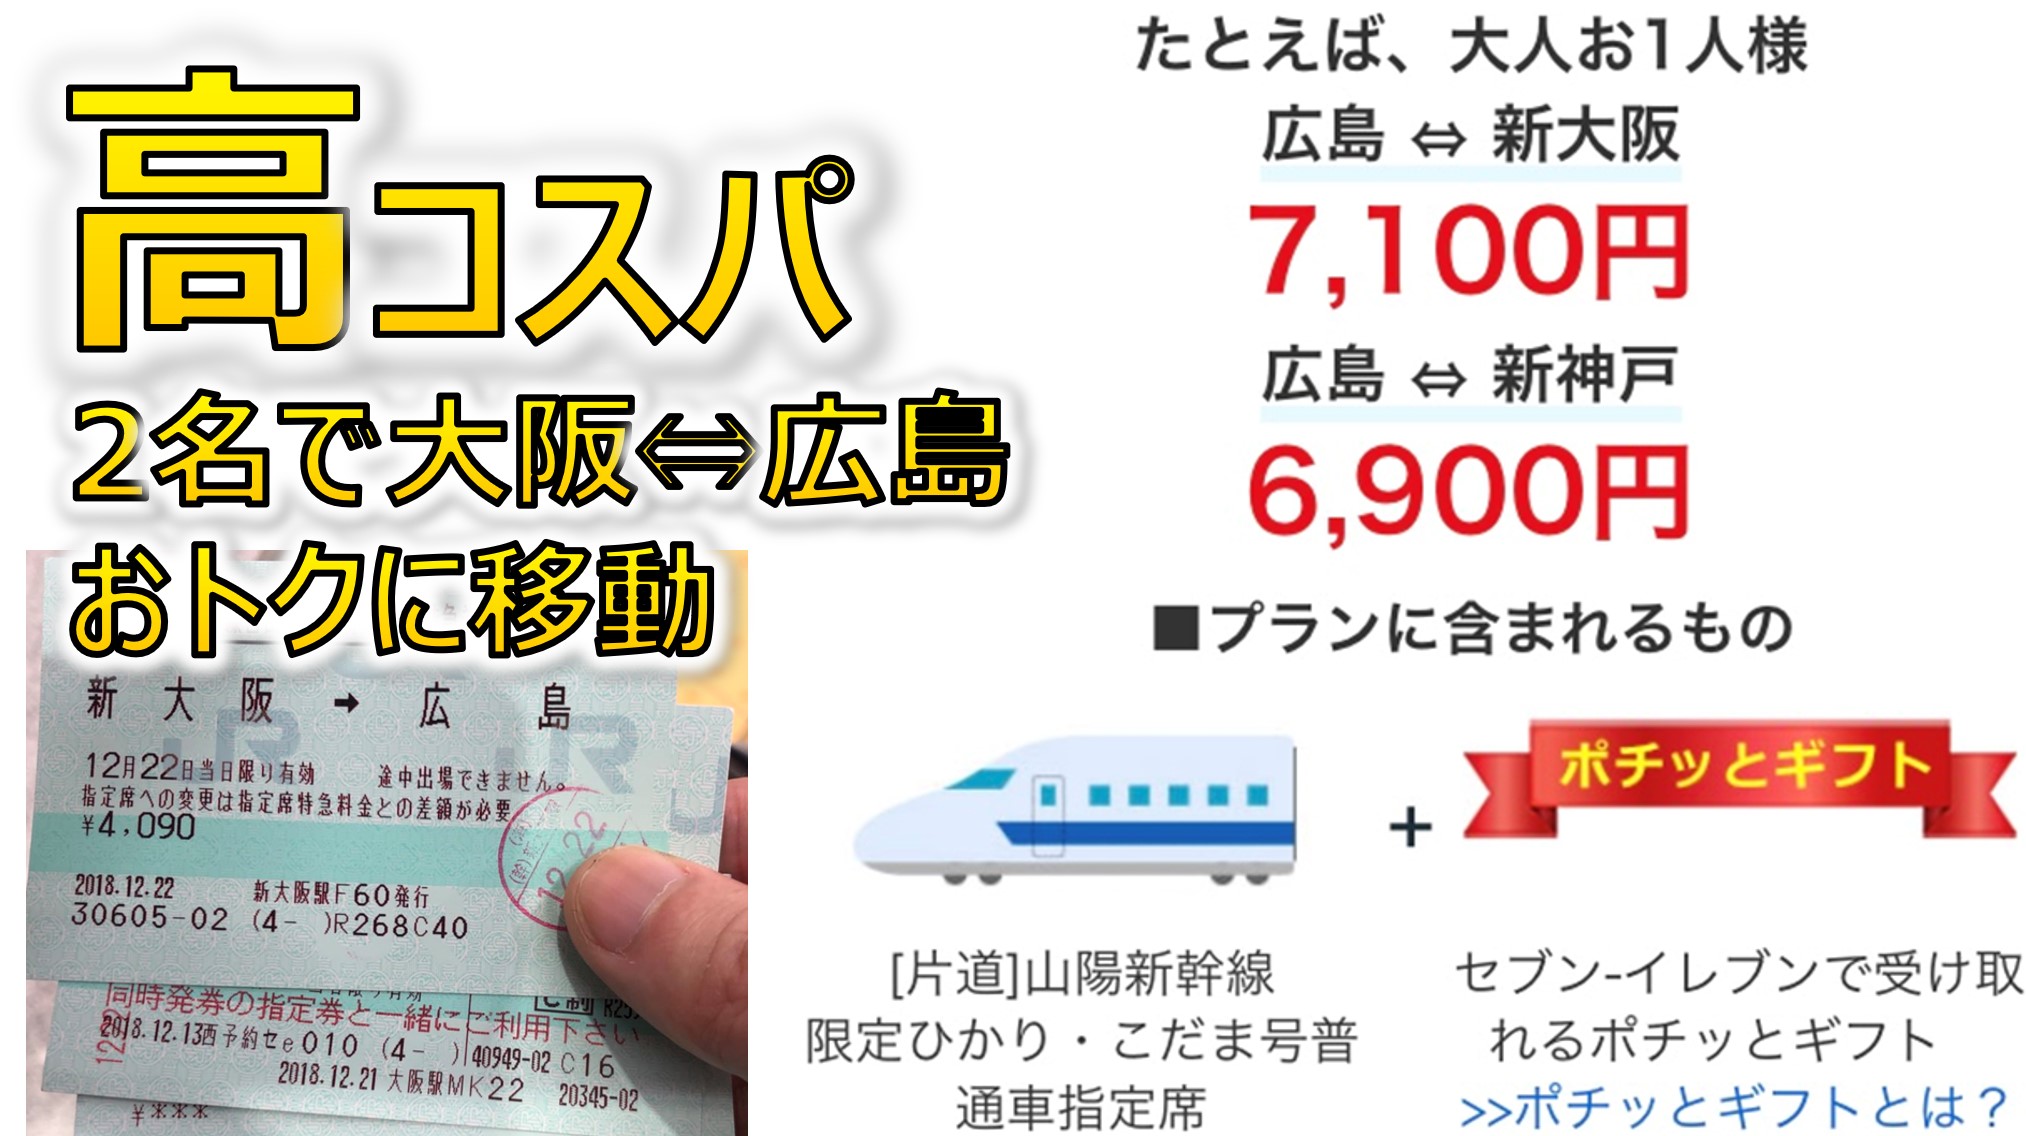 2人で大阪から広島へ旅行するなら バリ得こだま 新幹線 がコスパ最高 たびすぽ